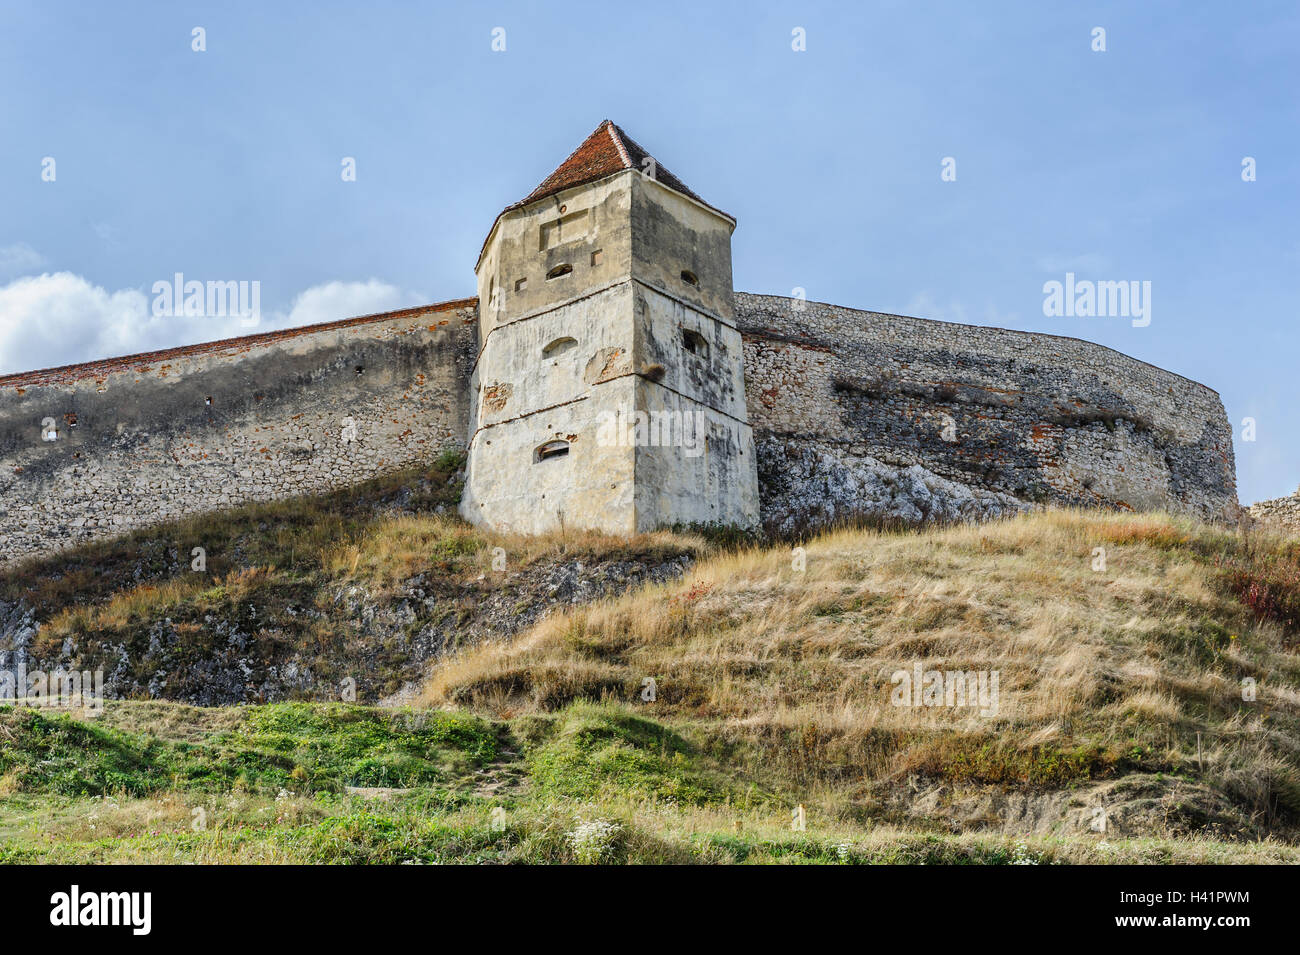 Mittelalterliche Festung in Rosenau, Siebenbürgen, Kronstadt, Rumänien Stockfoto